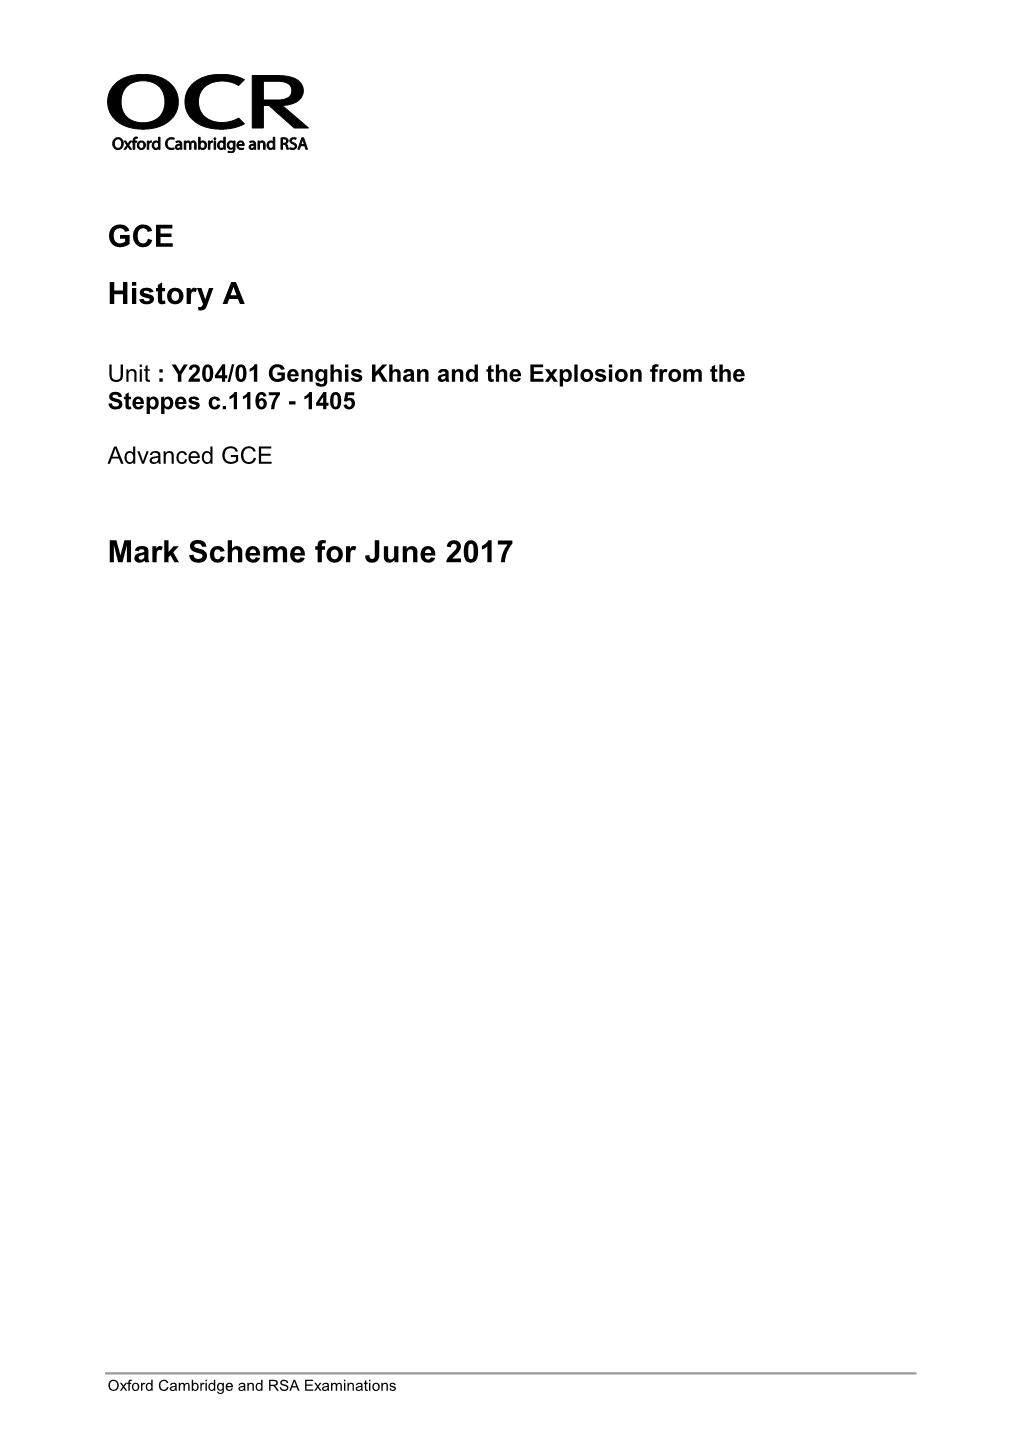 Mark Scheme for June 2017